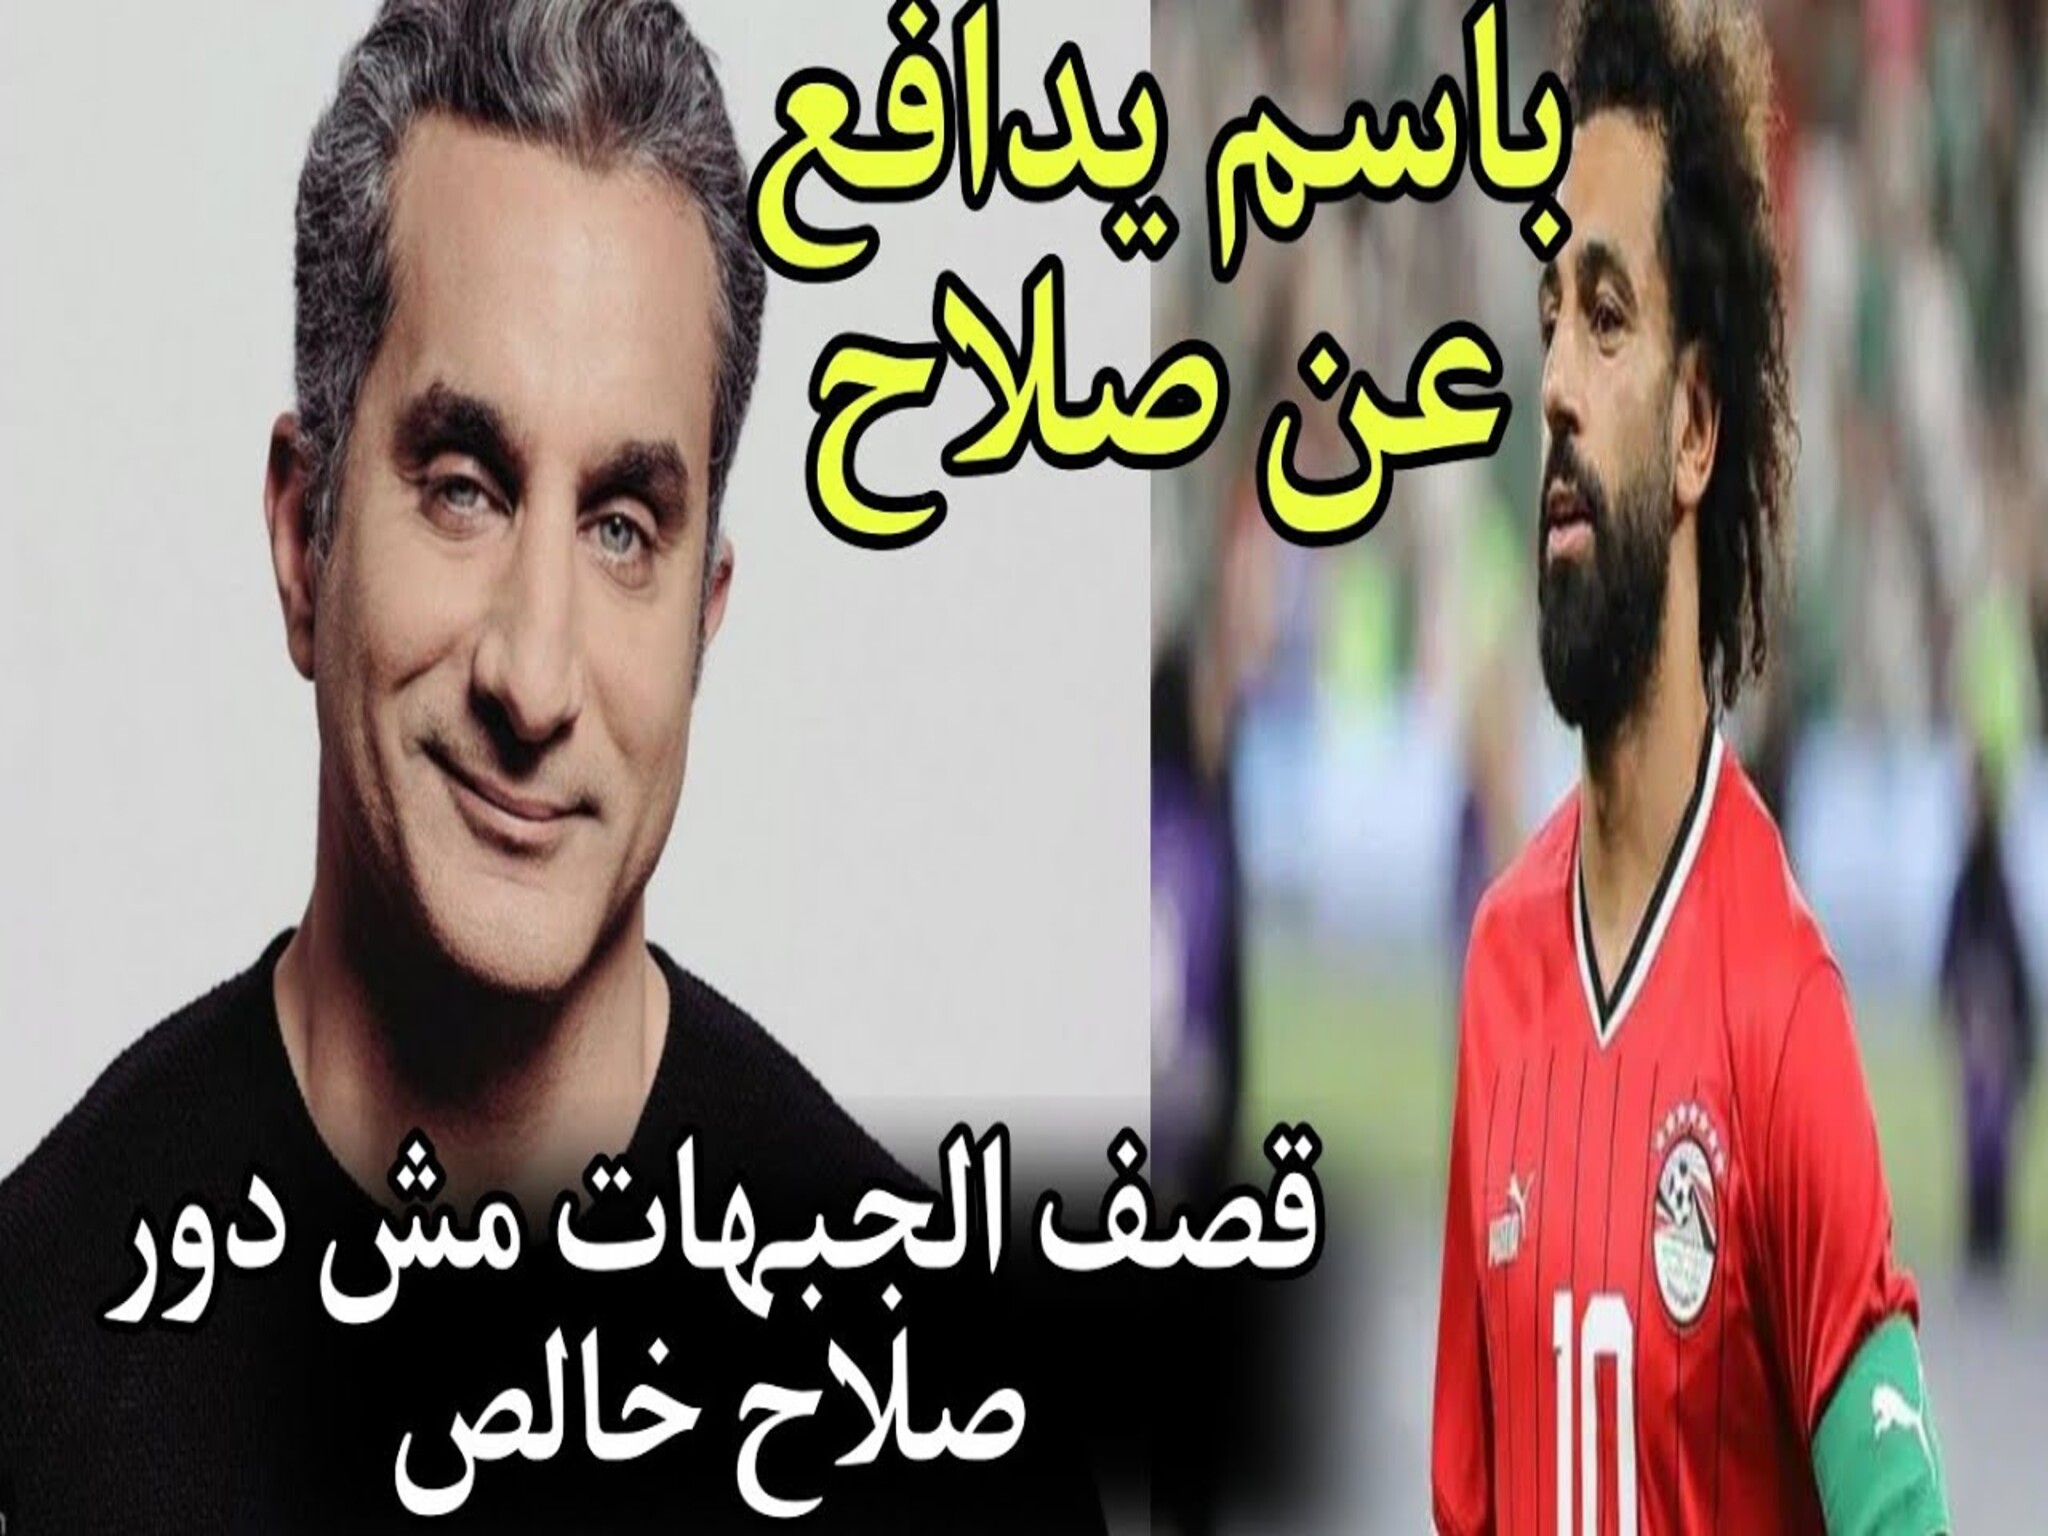  باسم يوسف يدافع عن محمد صلاح بهذه الكلمات...كان زمانه اتدبح